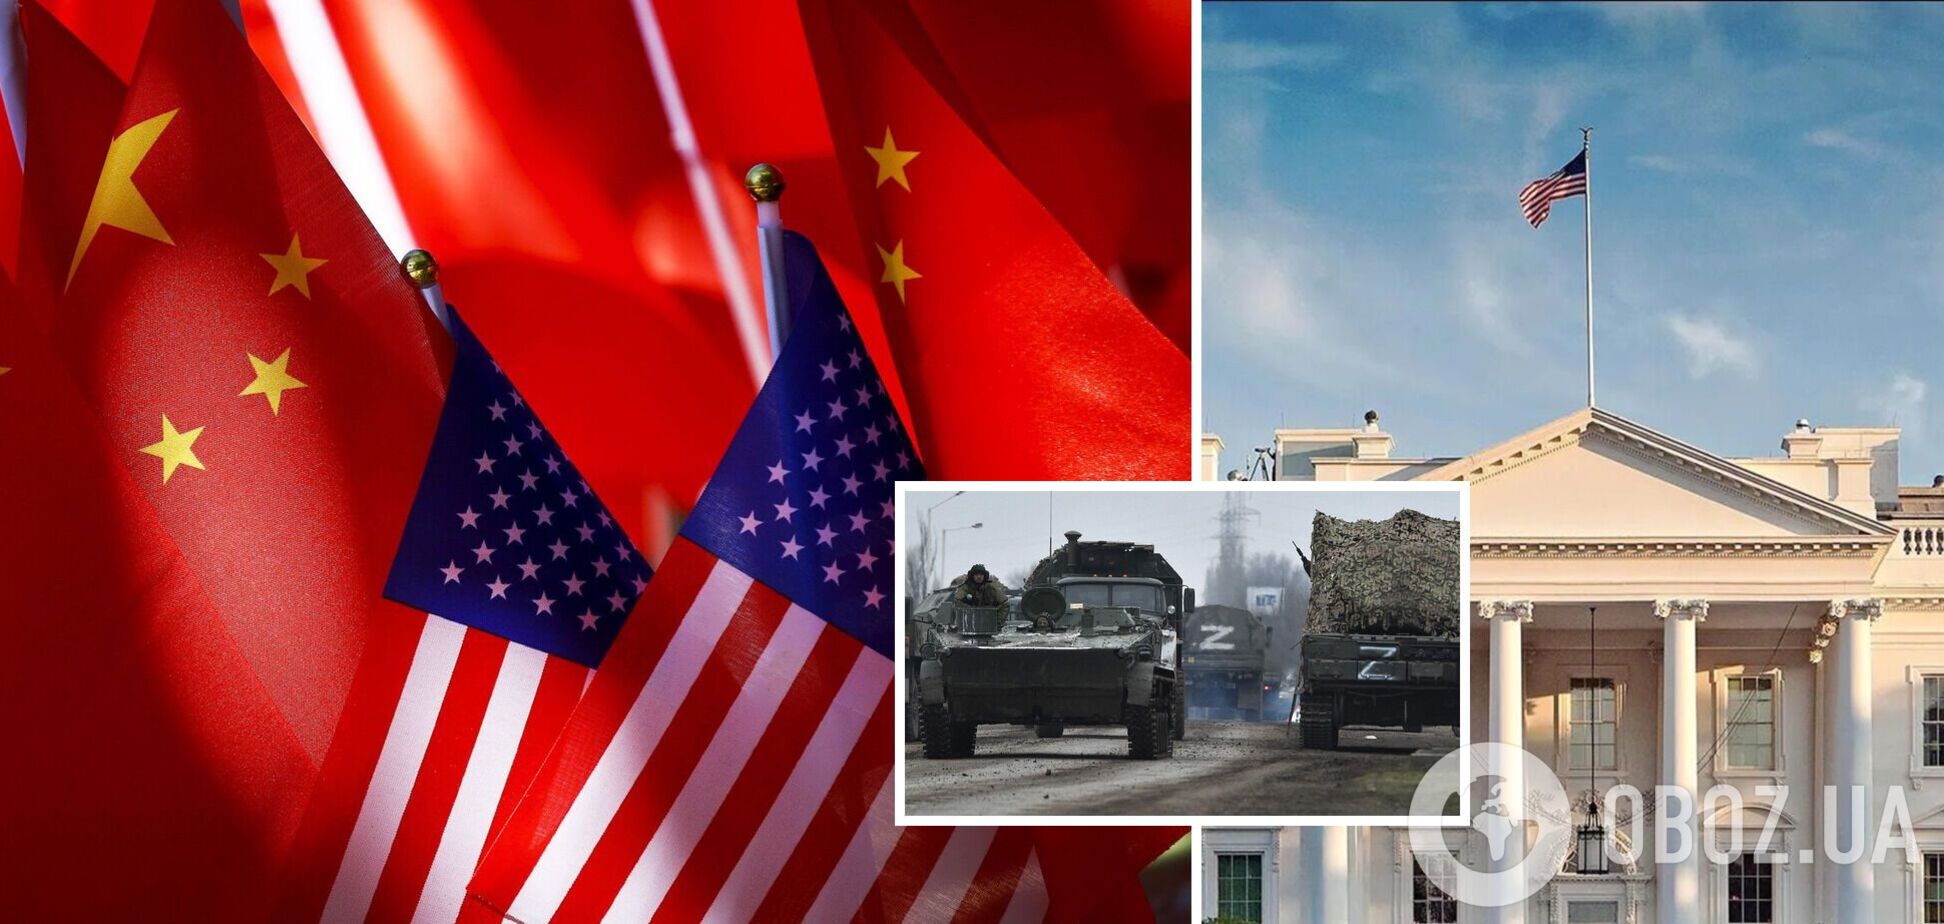 Представители США и Китая обсудили российскую агрессию против Украины – Белый дом